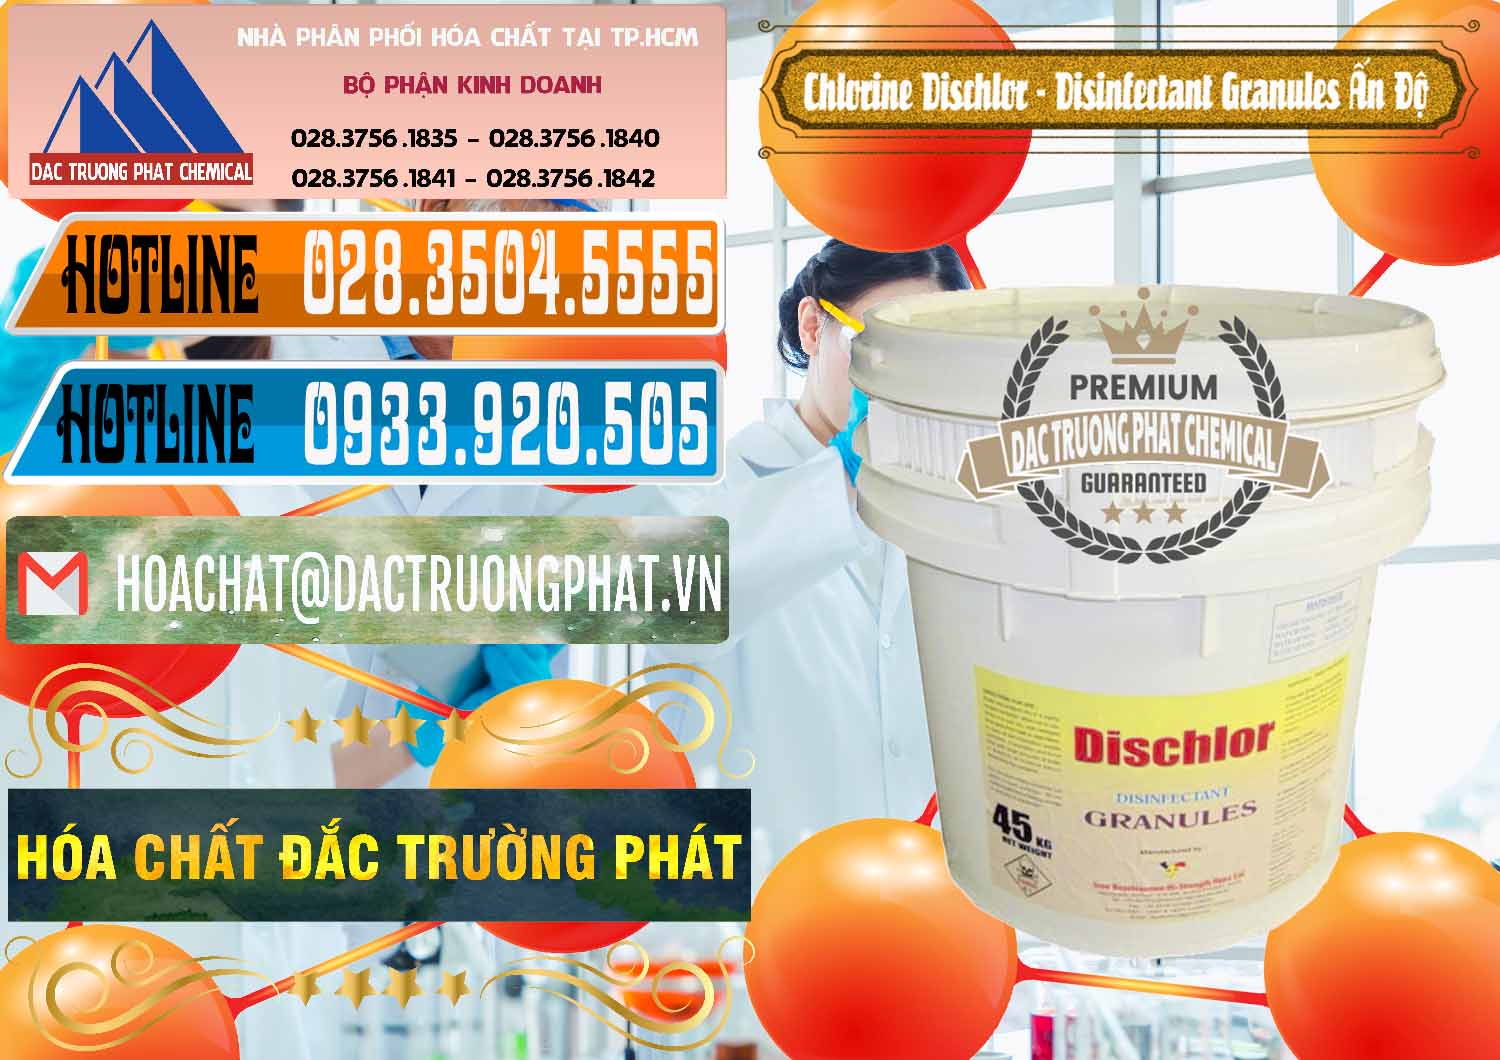 Nơi chuyên phân phối và bán Chlorine – Clorin 70% Dischlor - Disinfectant Granules Ấn Độ India - 0248 - Công ty kinh doanh - phân phối hóa chất tại TP.HCM - stmp.net